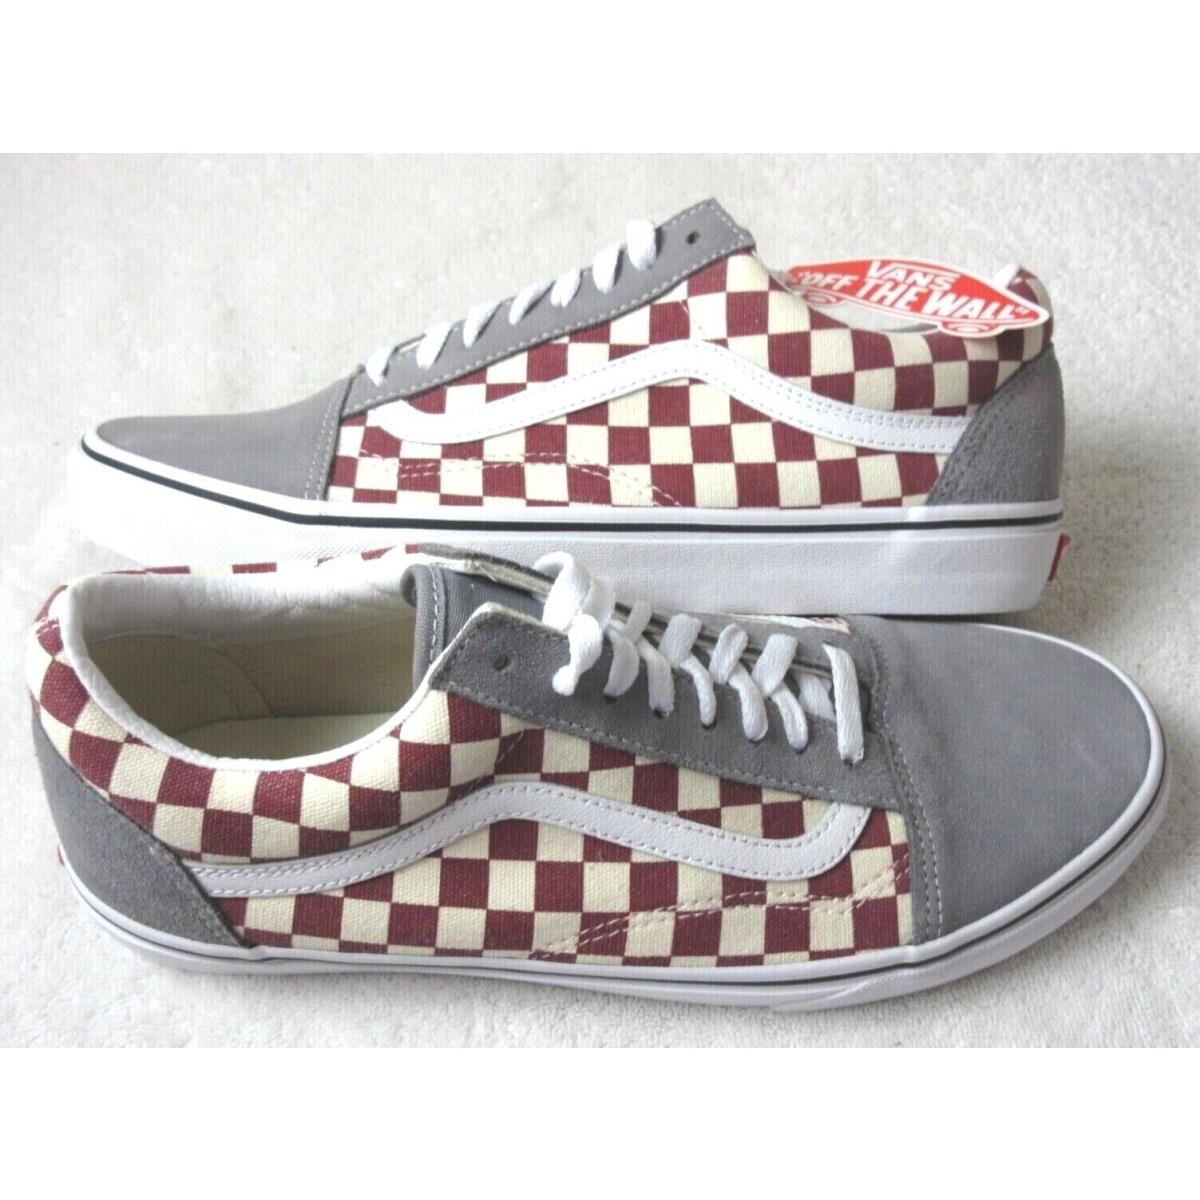 Vans Men`s Old Skool Checkerboard Frost Grey Rhubarb Skate Shoes Size 10.5